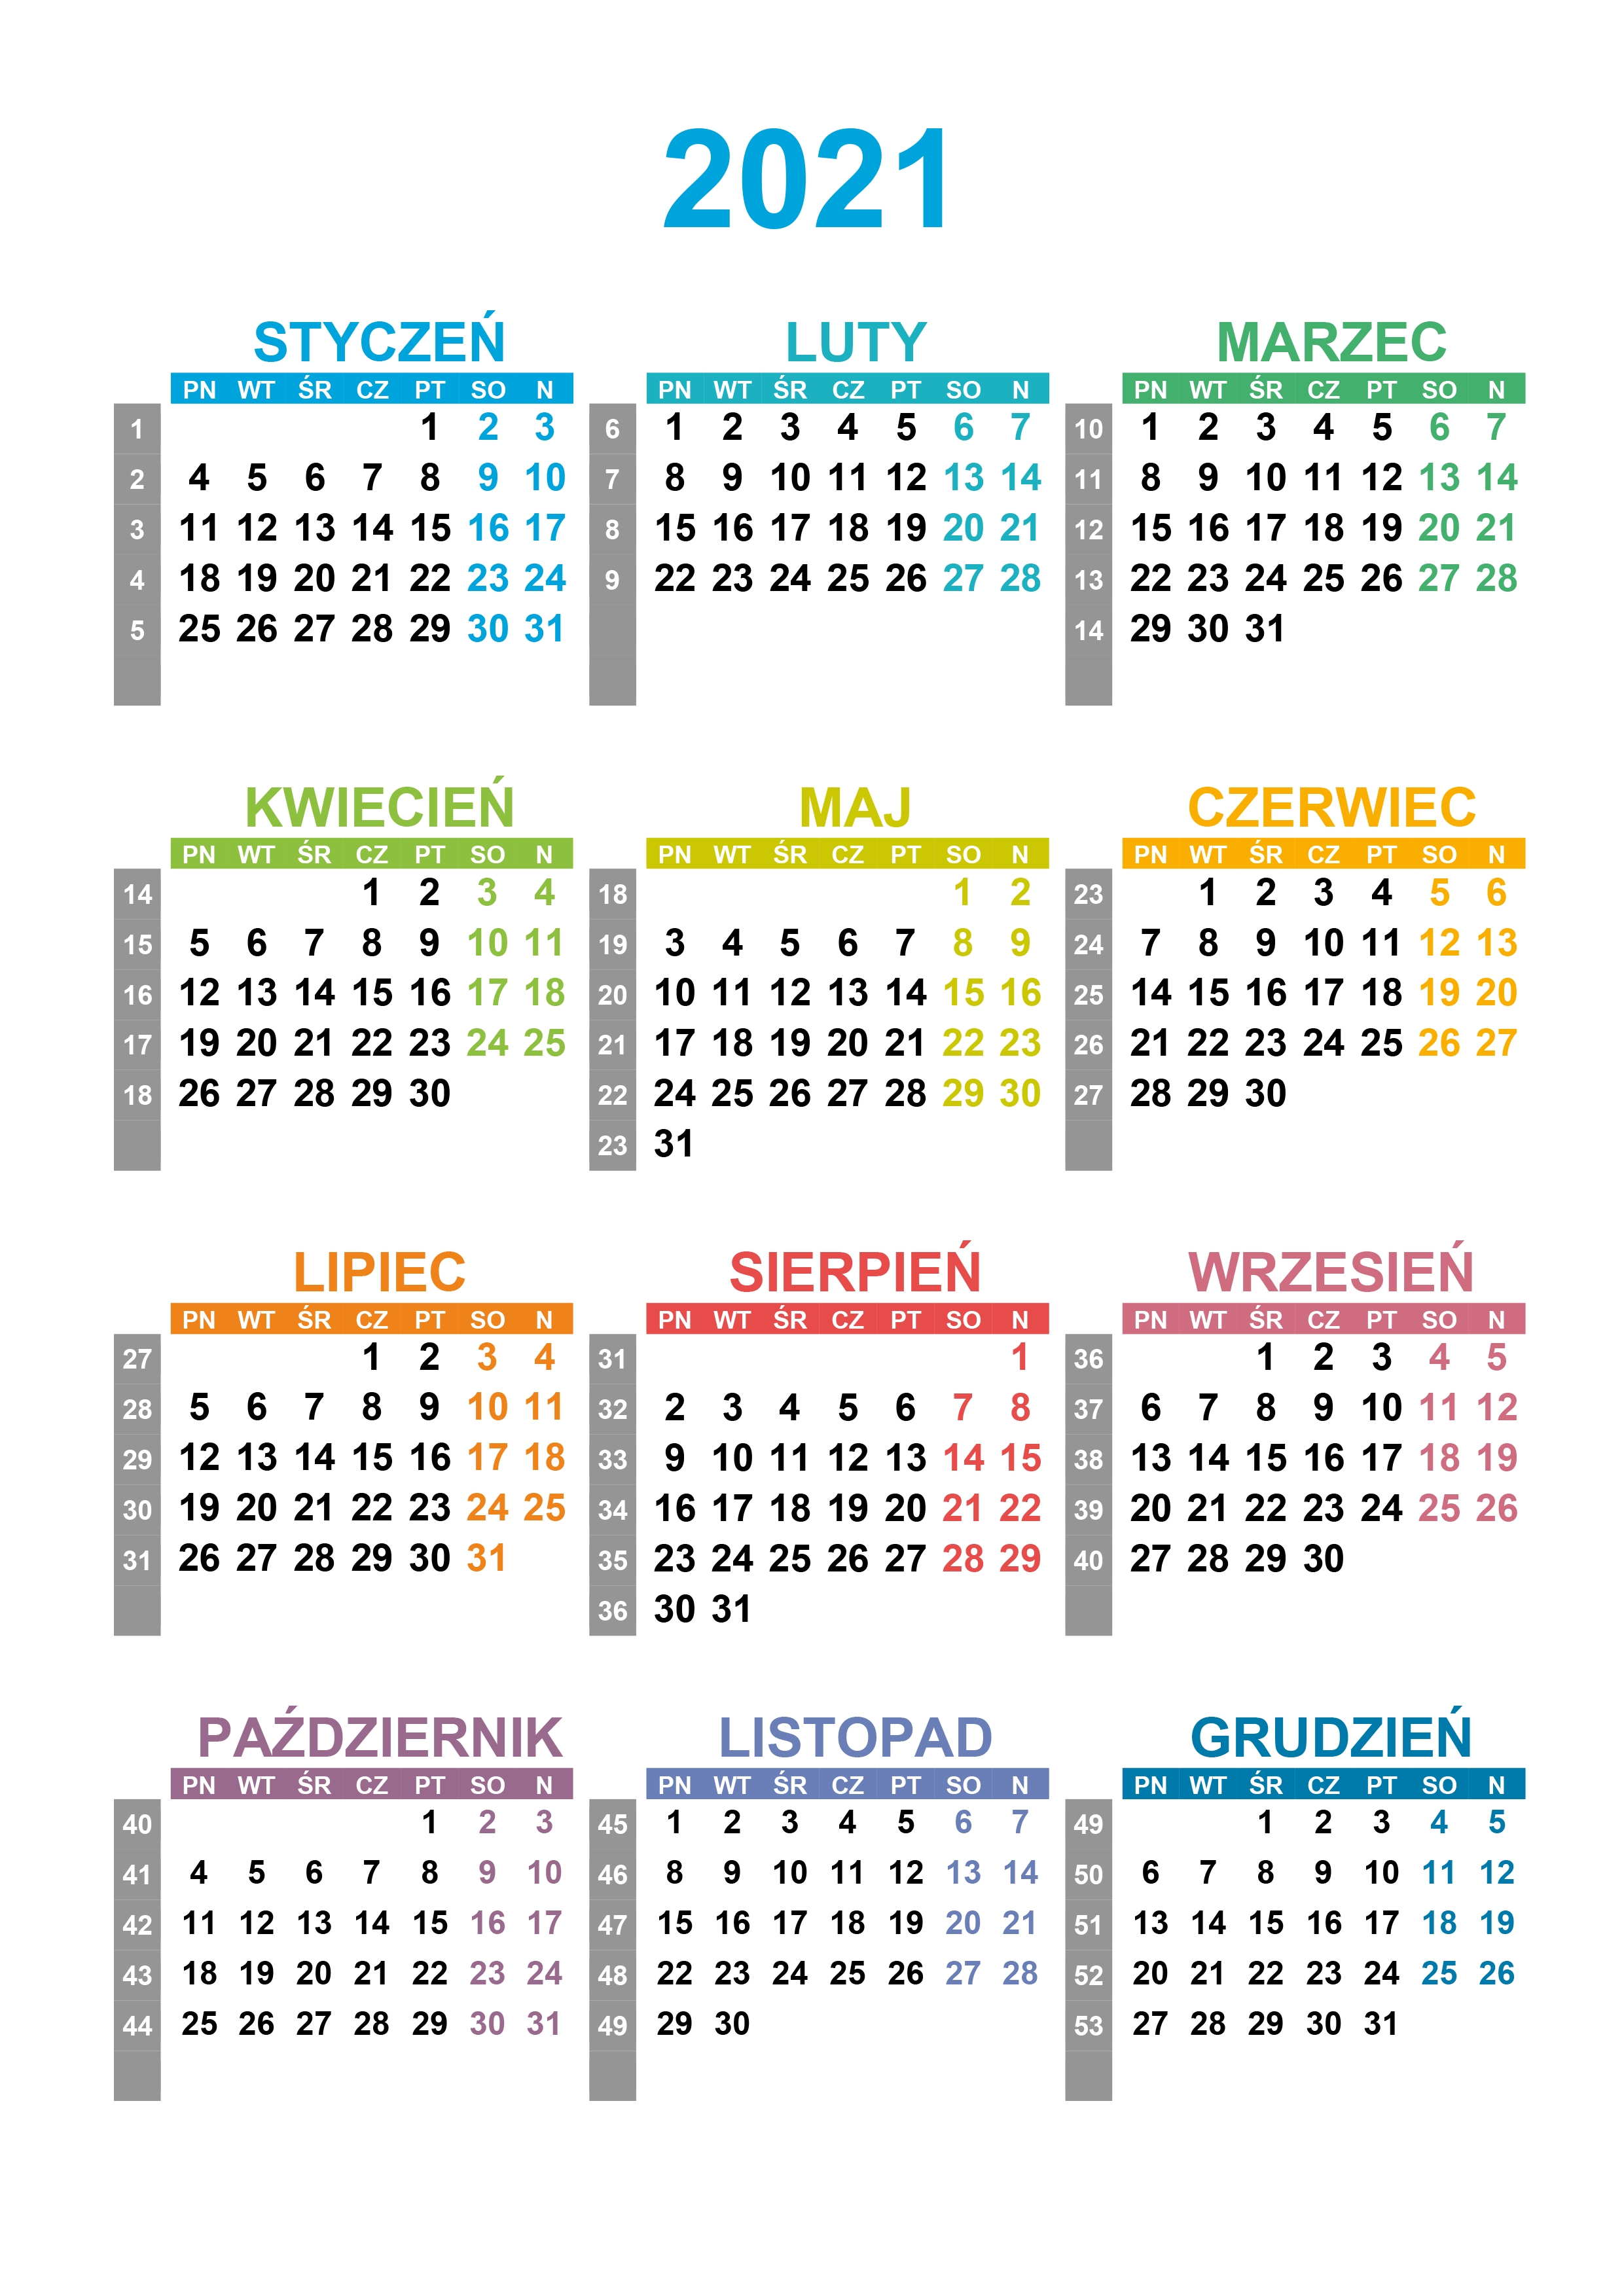 Kalendarz Roczny 2021 – Kalendarz.su Kalendarz Roczny 2021 2021